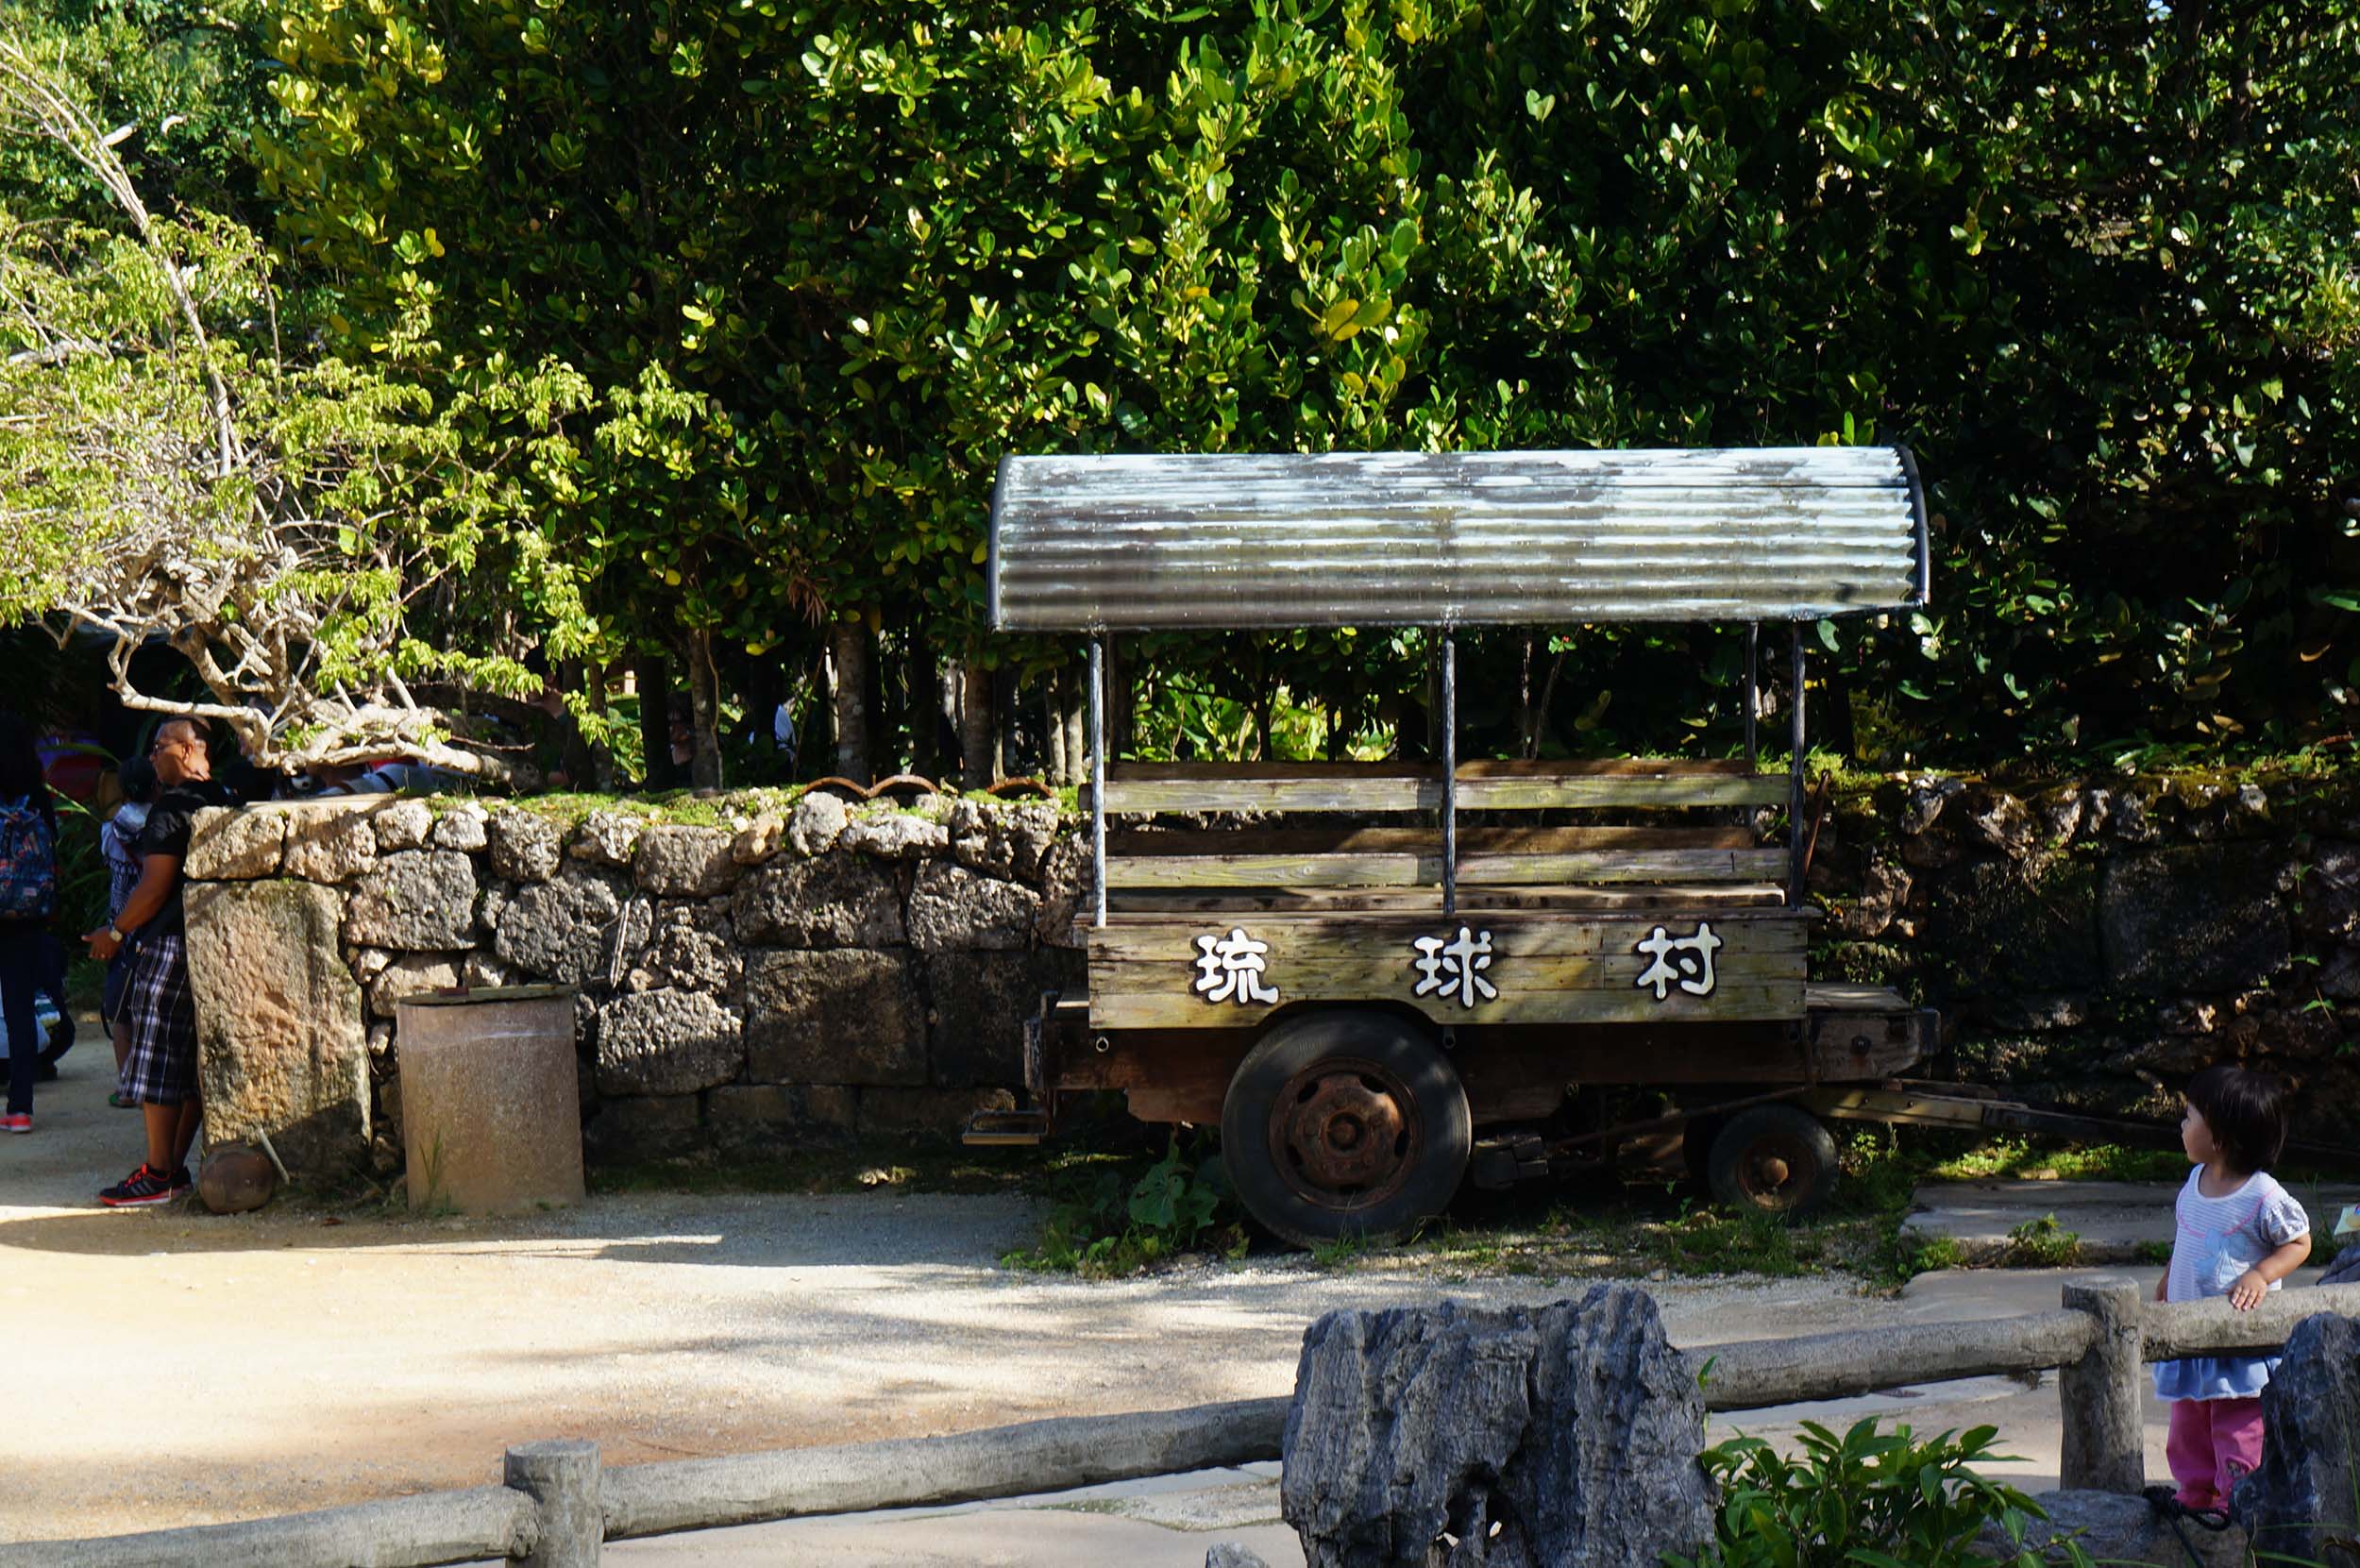 壁纸1440×900夏日冲绳 冲绳岛图片 一望无际的沙滩壁纸,冲绳岛的碧海蓝天壁纸图片-风景壁纸-风景图片素材-桌面壁纸